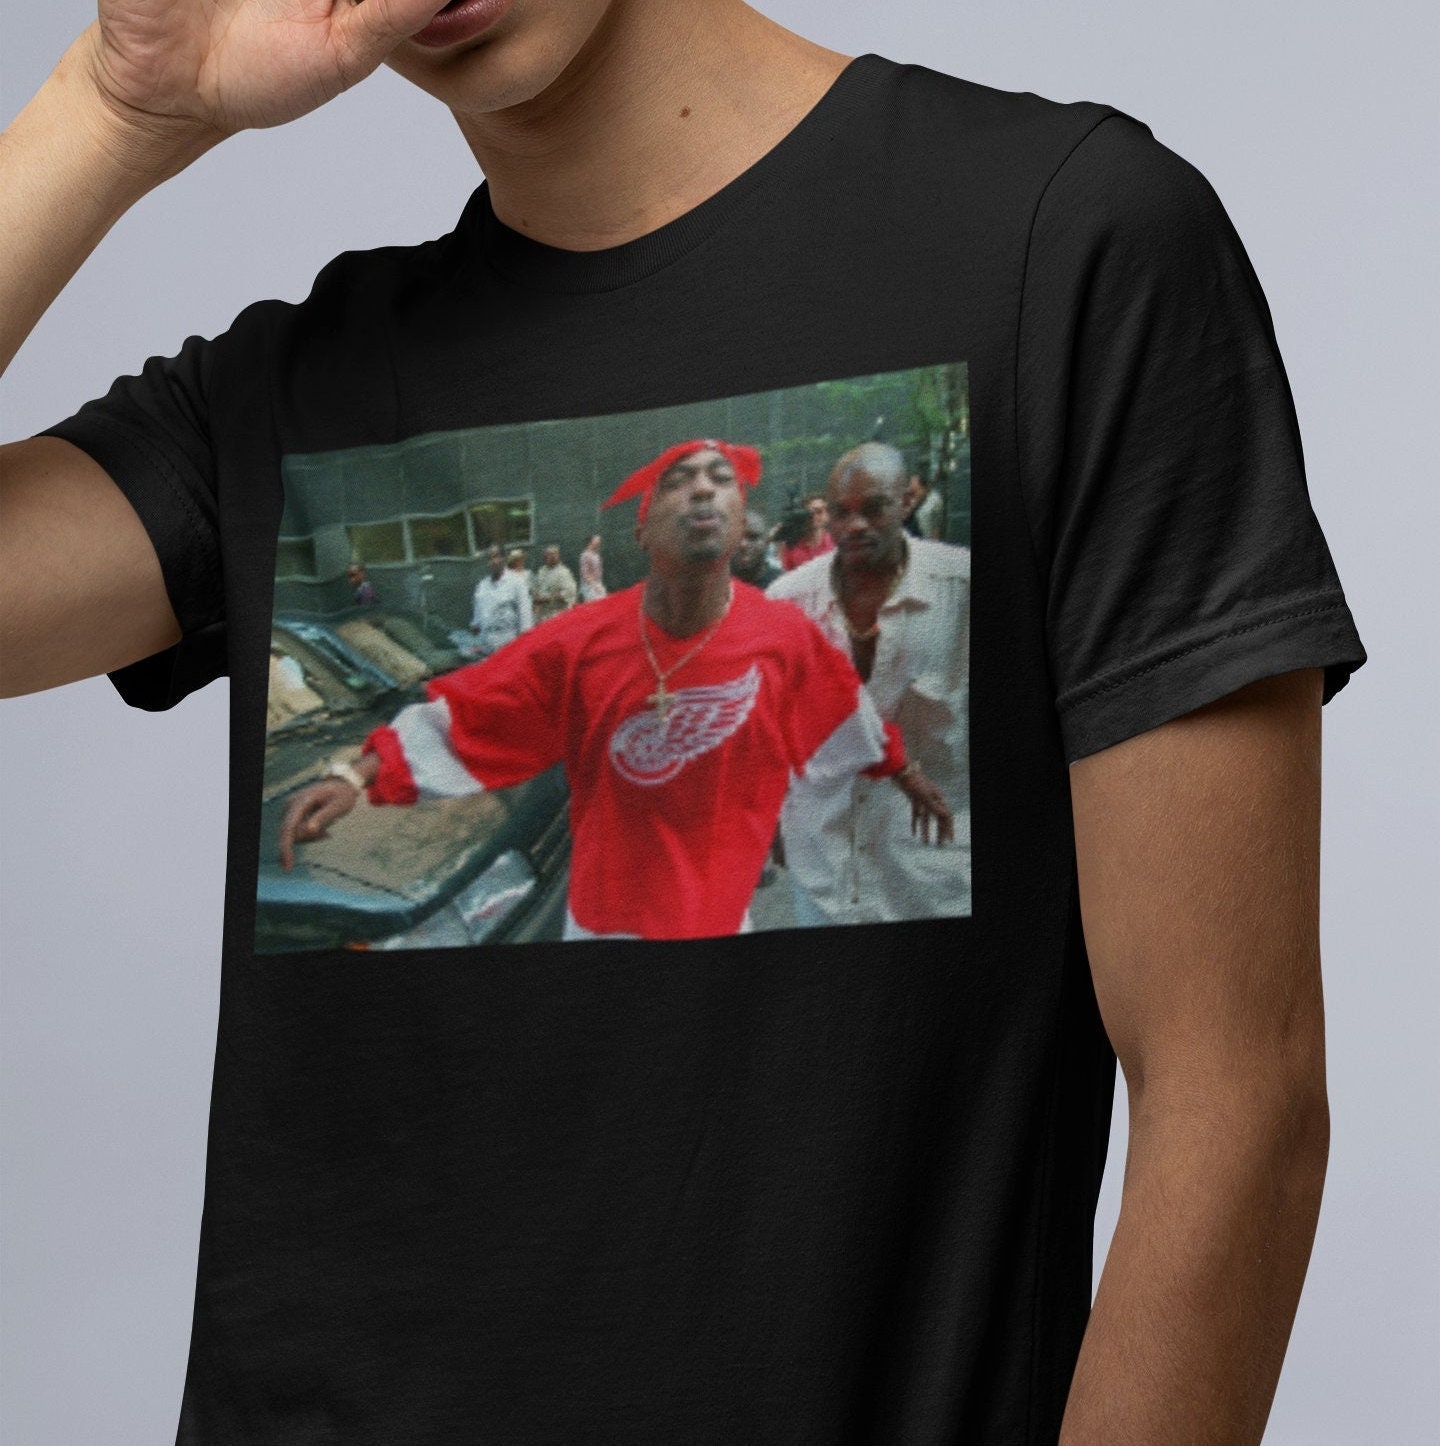 Discover Tupac T-Shirt, Red Wings T-Shirt, Rapper Shirt, Rap Shirt, 2pac Shirt